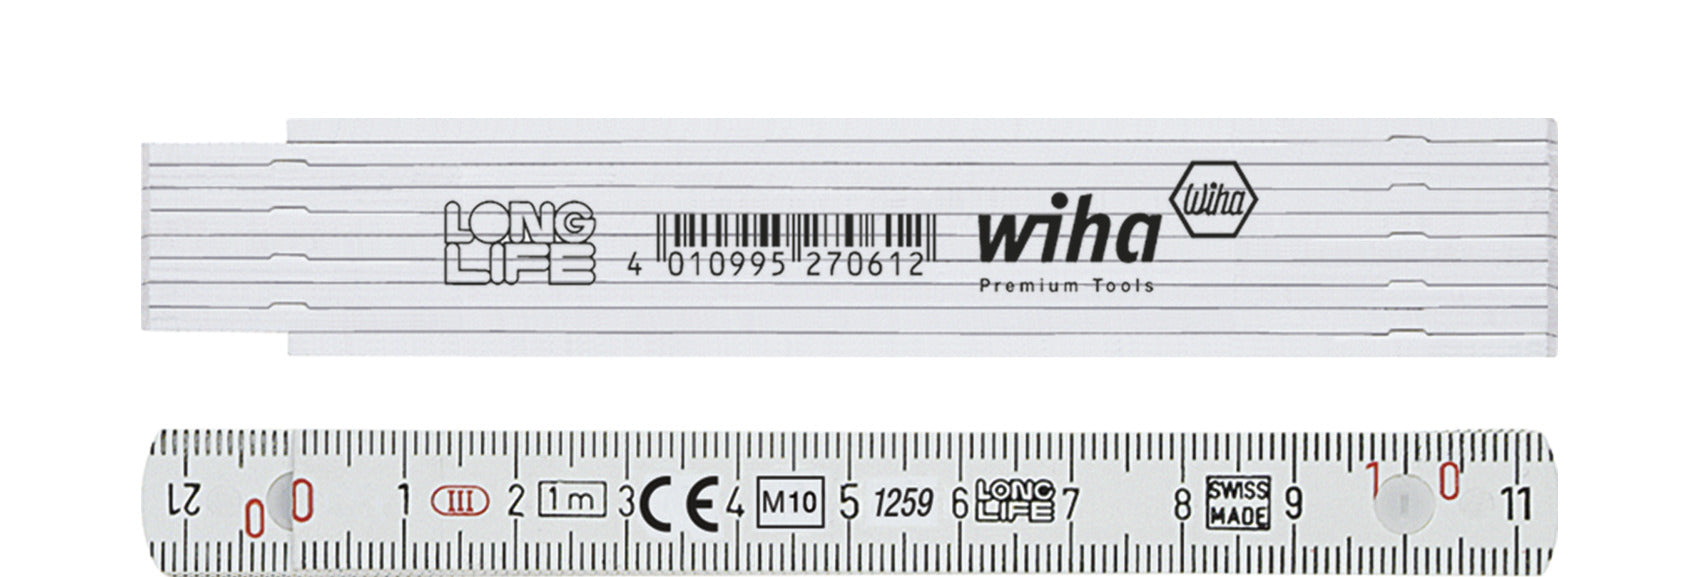 Wiha 27061 Folding Ruler 1m Yellow Metric Plastic Longlife